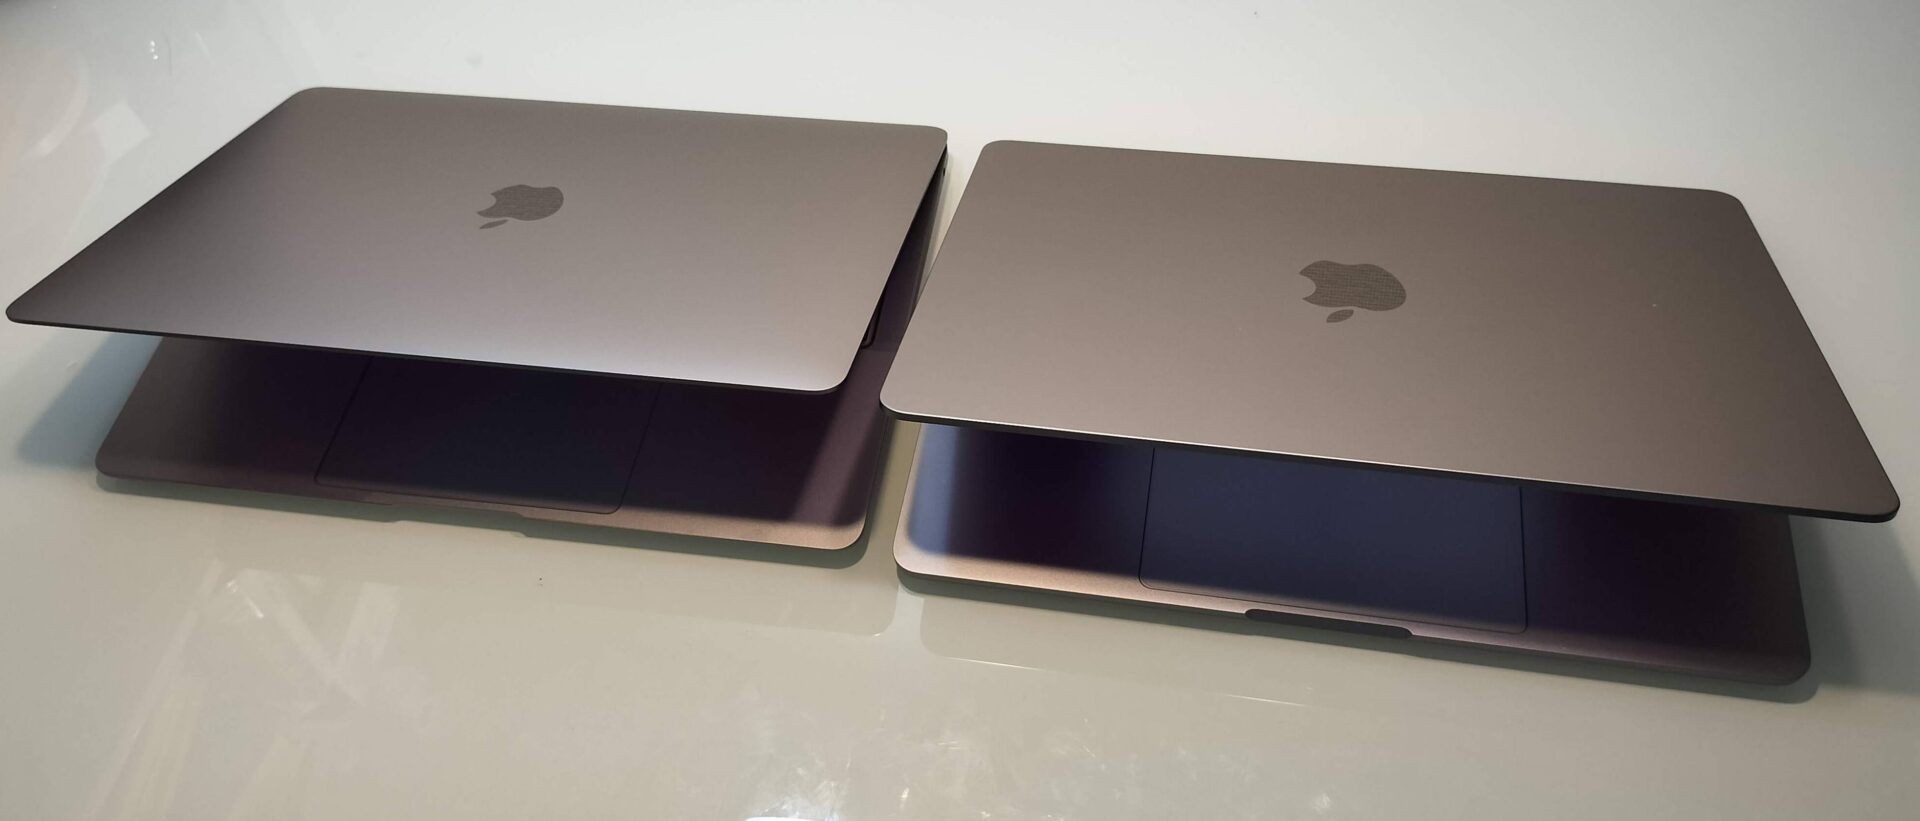 レビュー】Macbook Air M1/M2を両方買って比較してみた | Rankman.net